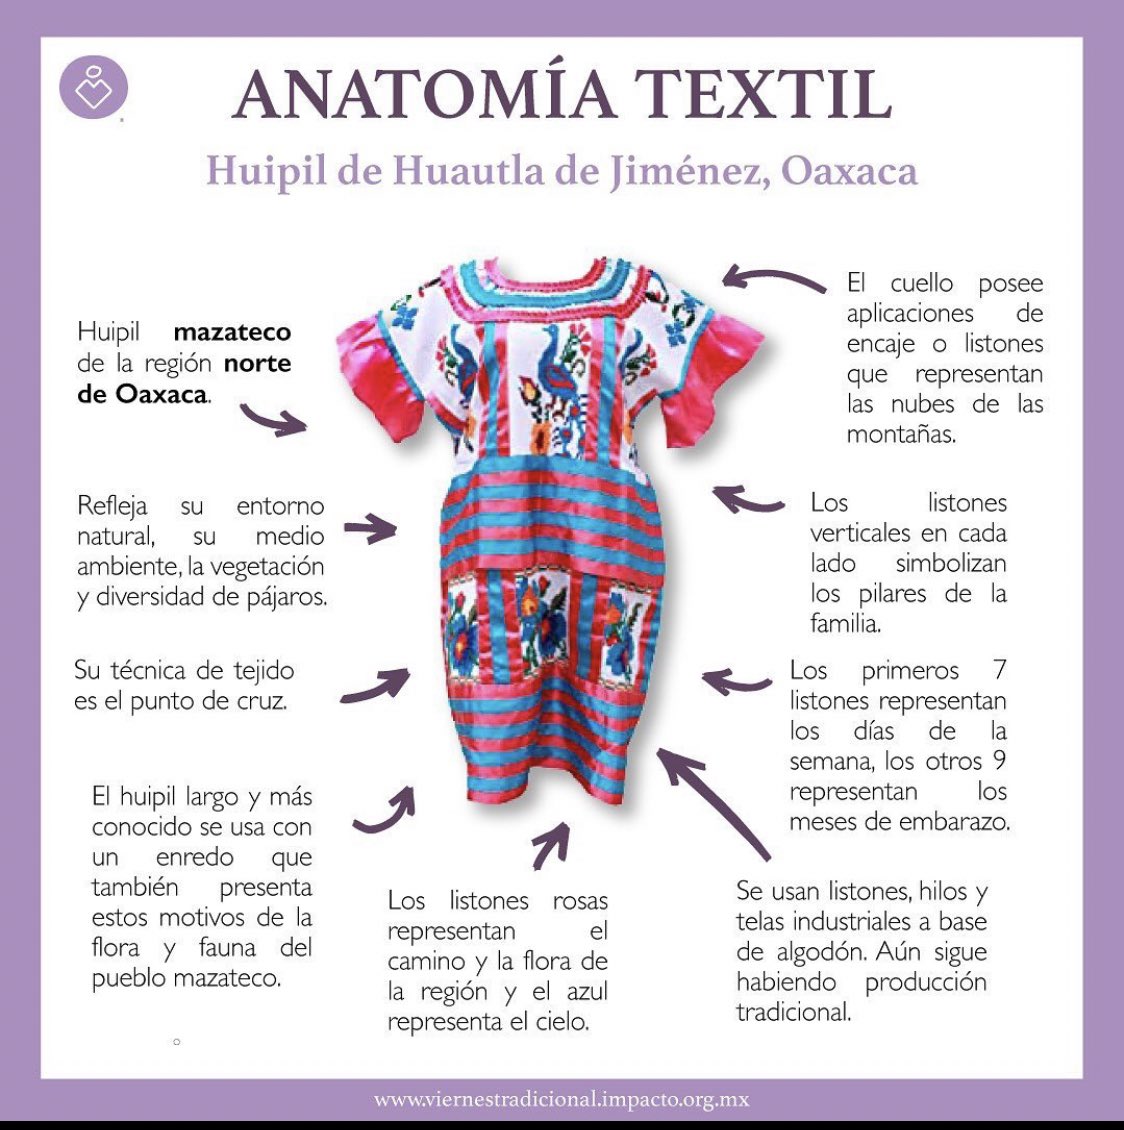 Viridiana González on Twitter: "(...cont) Gracias a @VTradicional por esta  infografía sobre Anatomía Textil que da cuenta del magnífico trabajo del  huipil Mazateco. Han recopilado mucha información directa de sus creadores,  misma